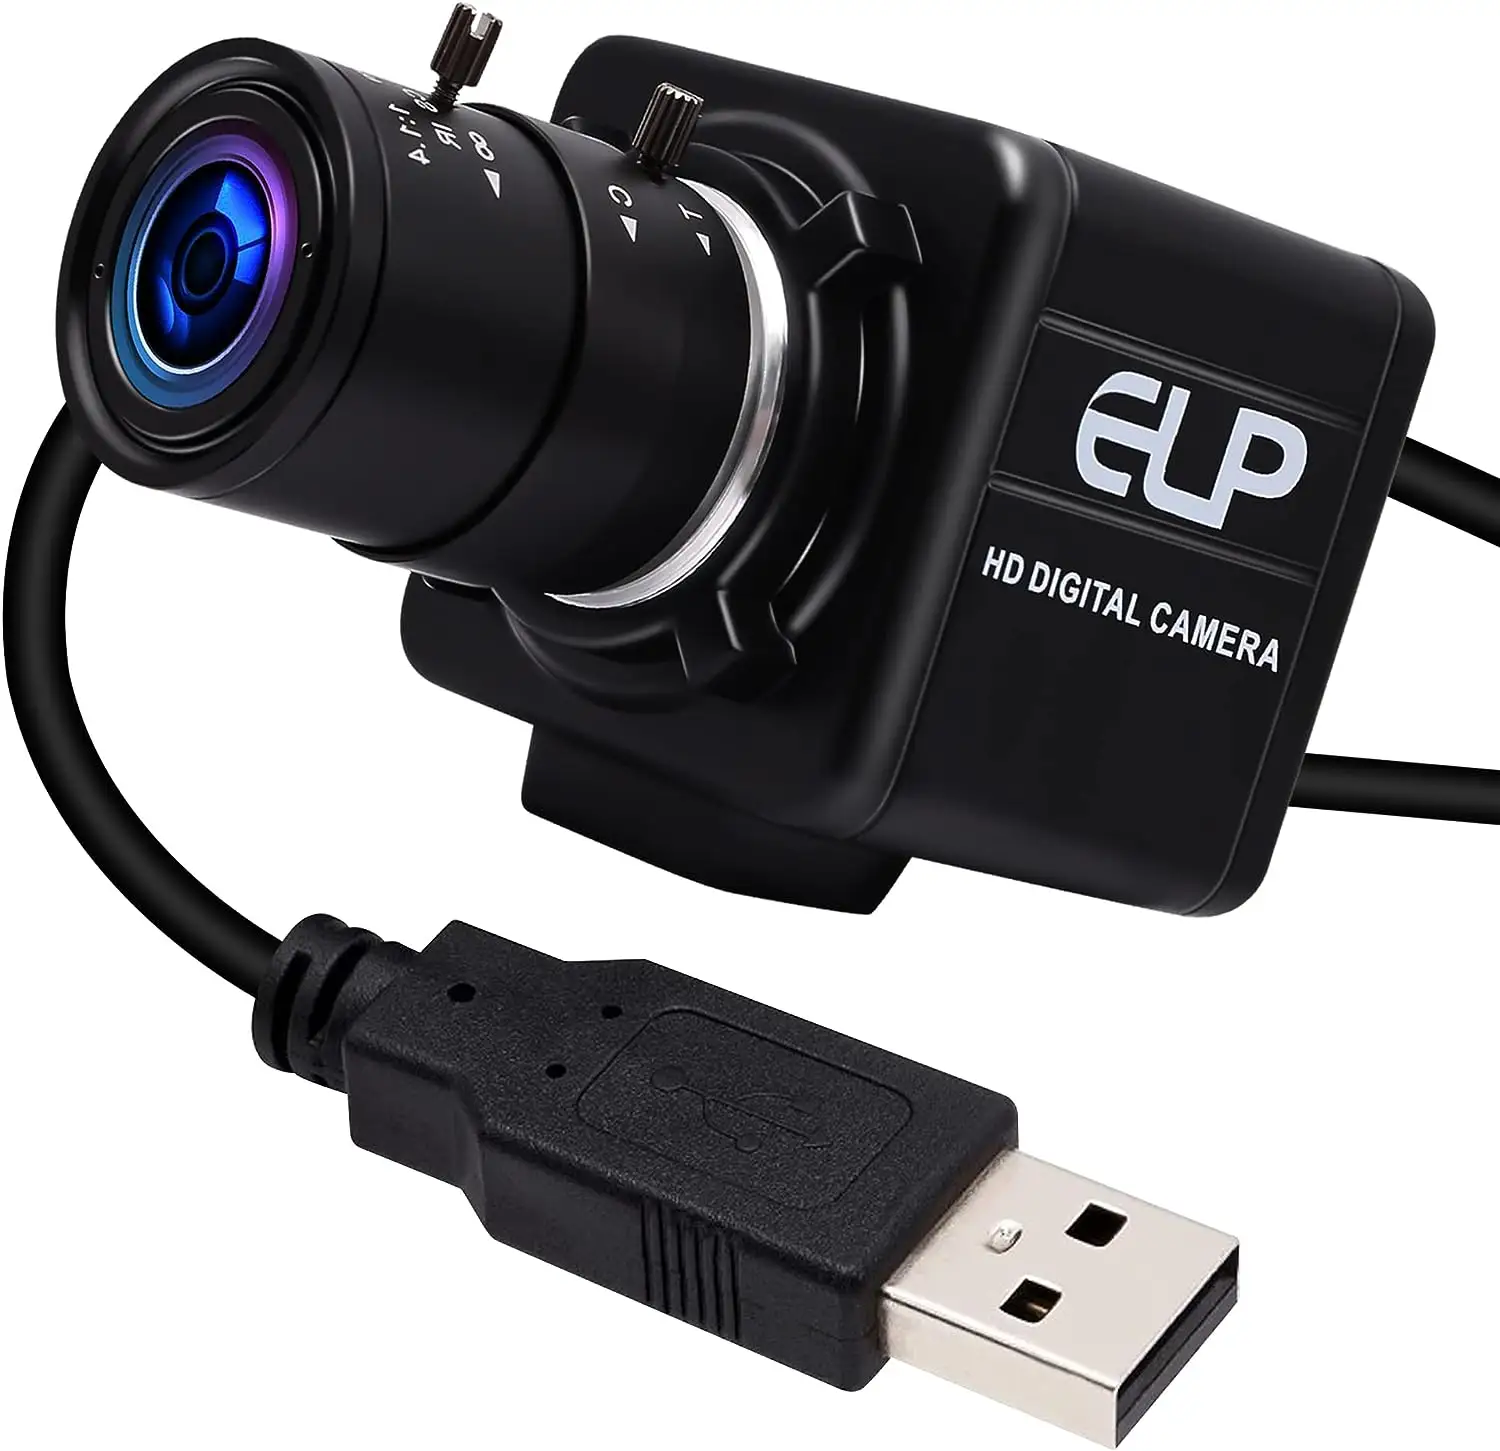 كاميرا كاميرا ويب صغيرة بسرعة عالية 2.3MP 90fps بمنفذ USB UVC AR0234 مع تكبير يدوي-12 ضعيفي